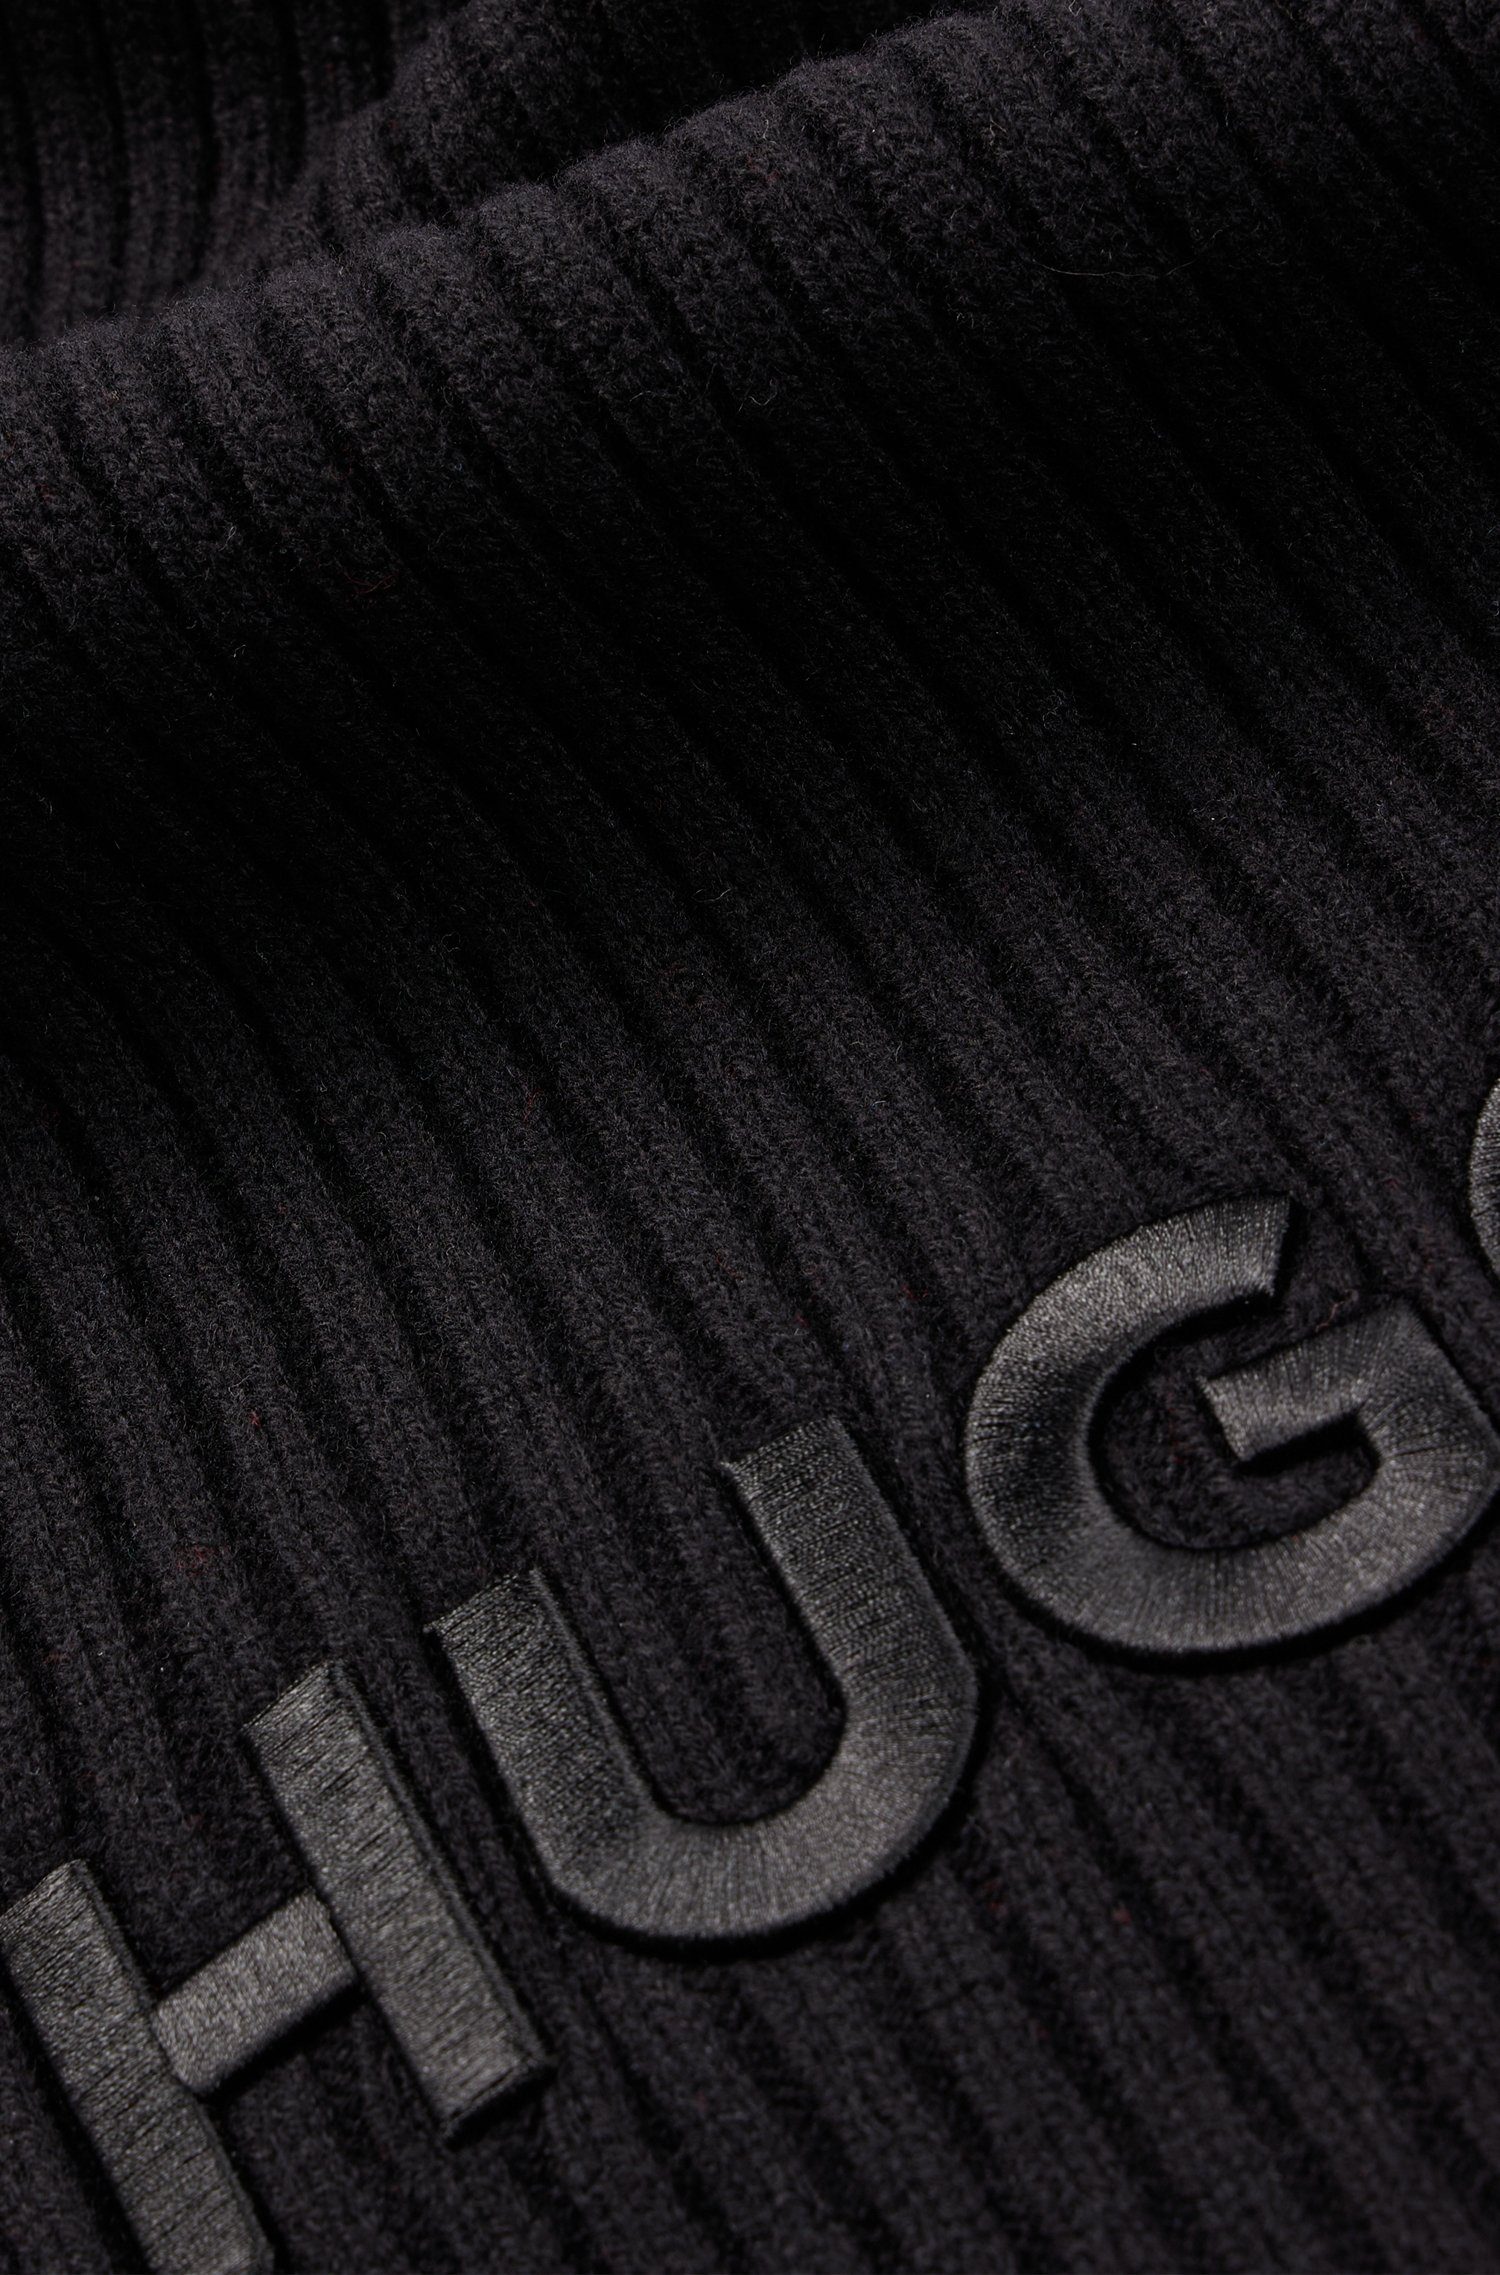 HUGO Schal mit HUGO-Logoschriftzug Zunio-1, Black